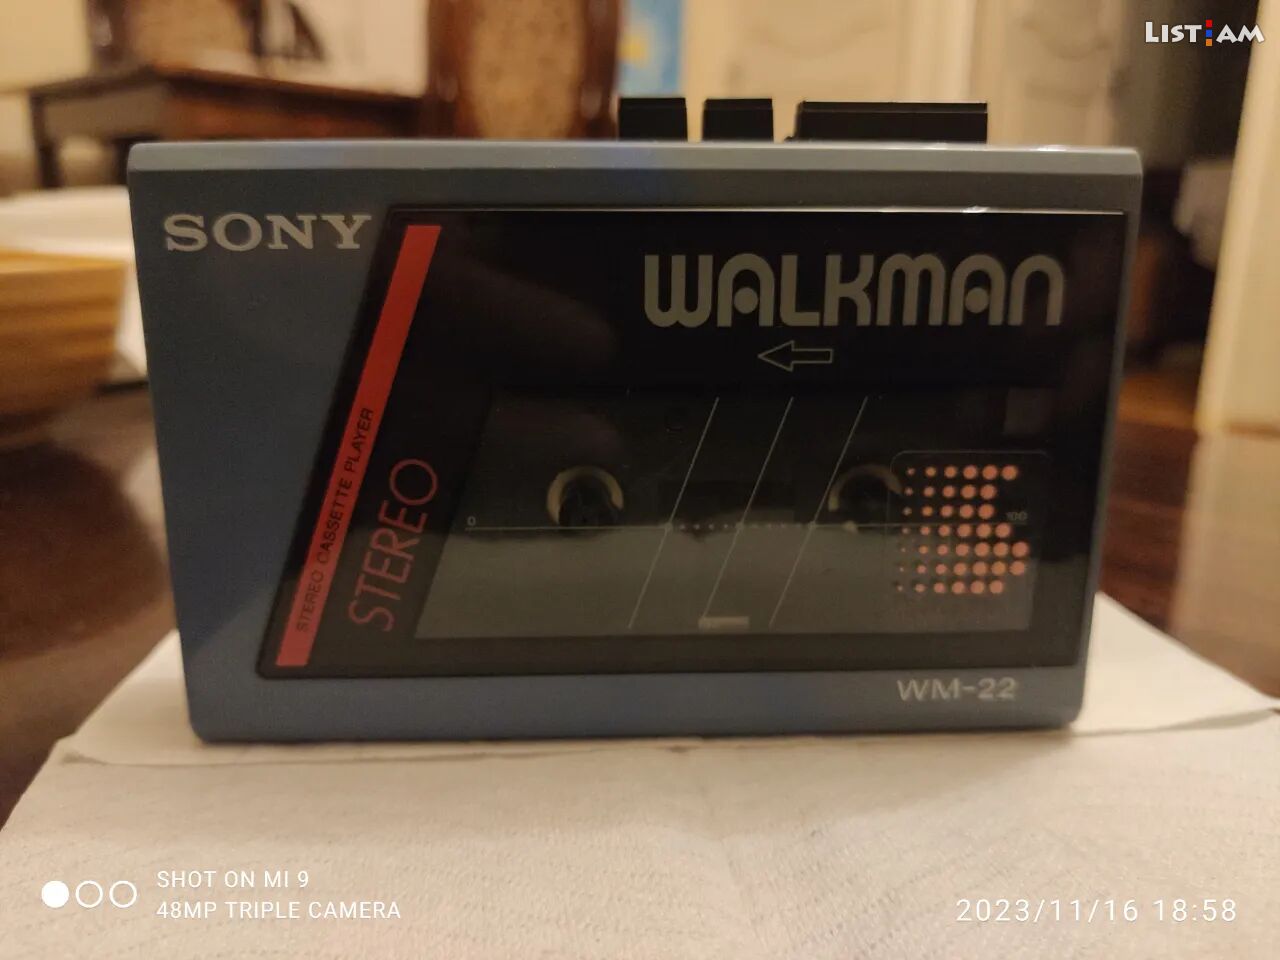 Sony walkman made in